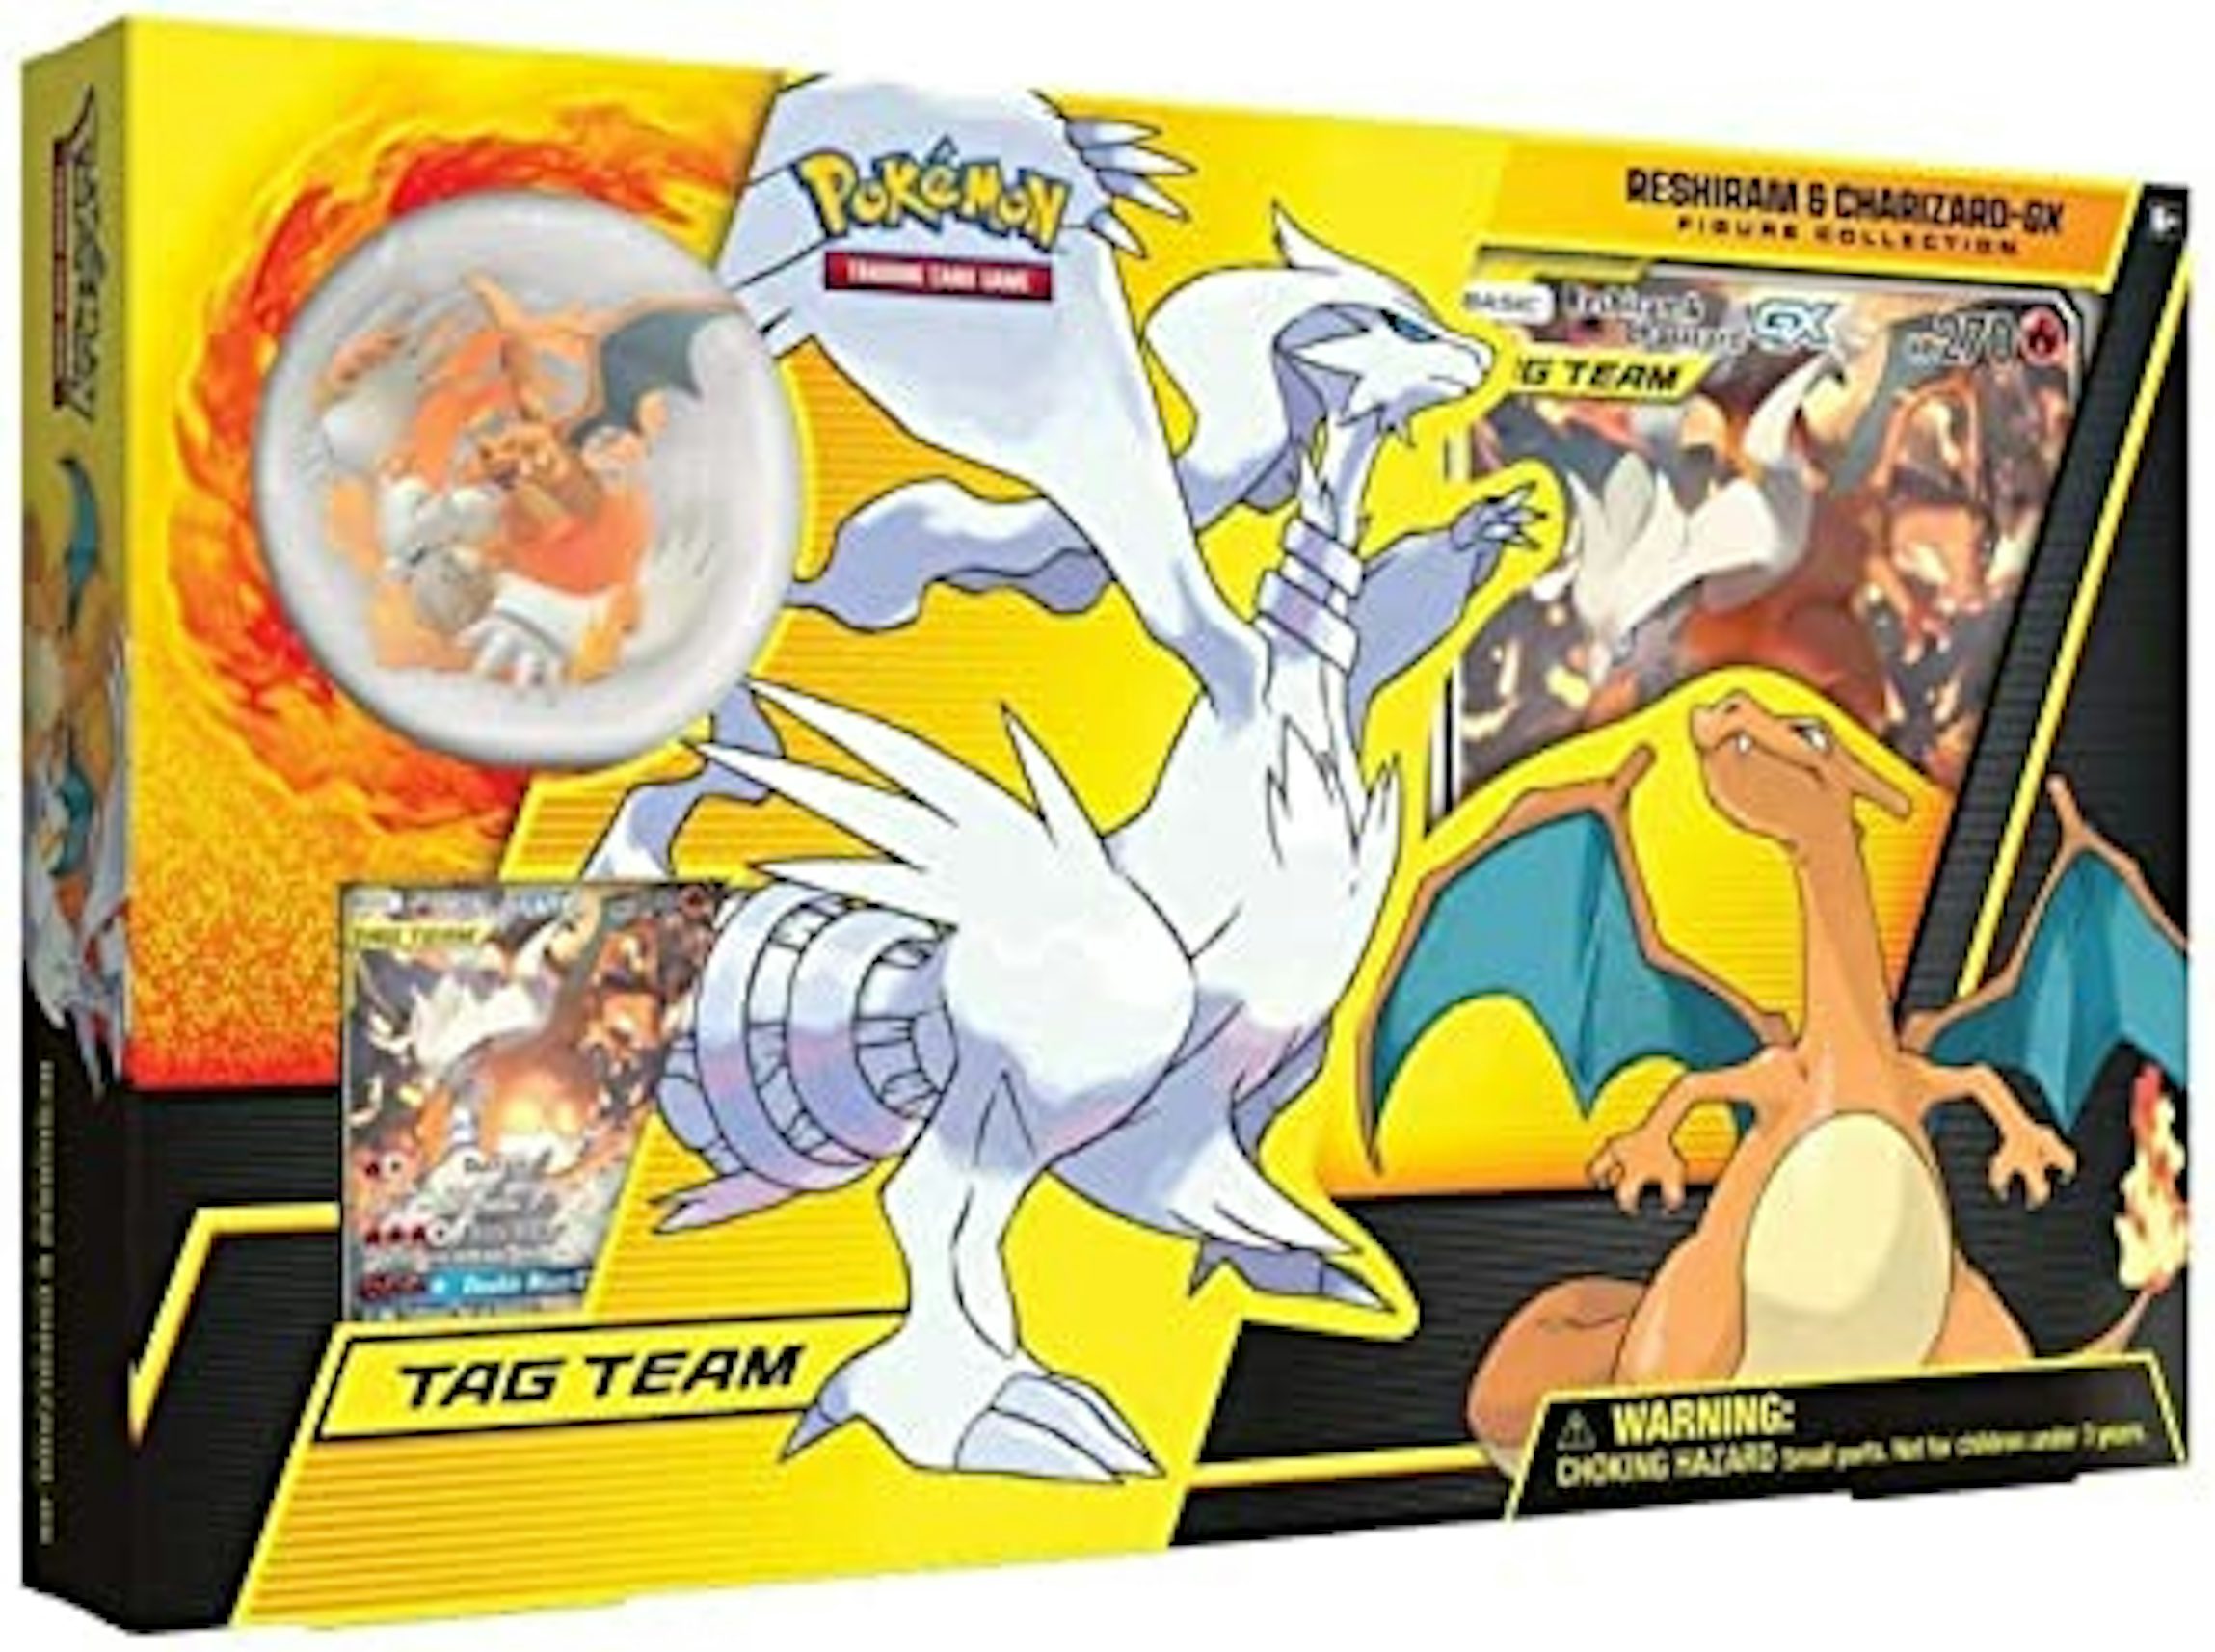 Pokémon TCG: Baralhos Batalha do Reshiram e Charizard GX com Heatran  Radiante (Shiny)